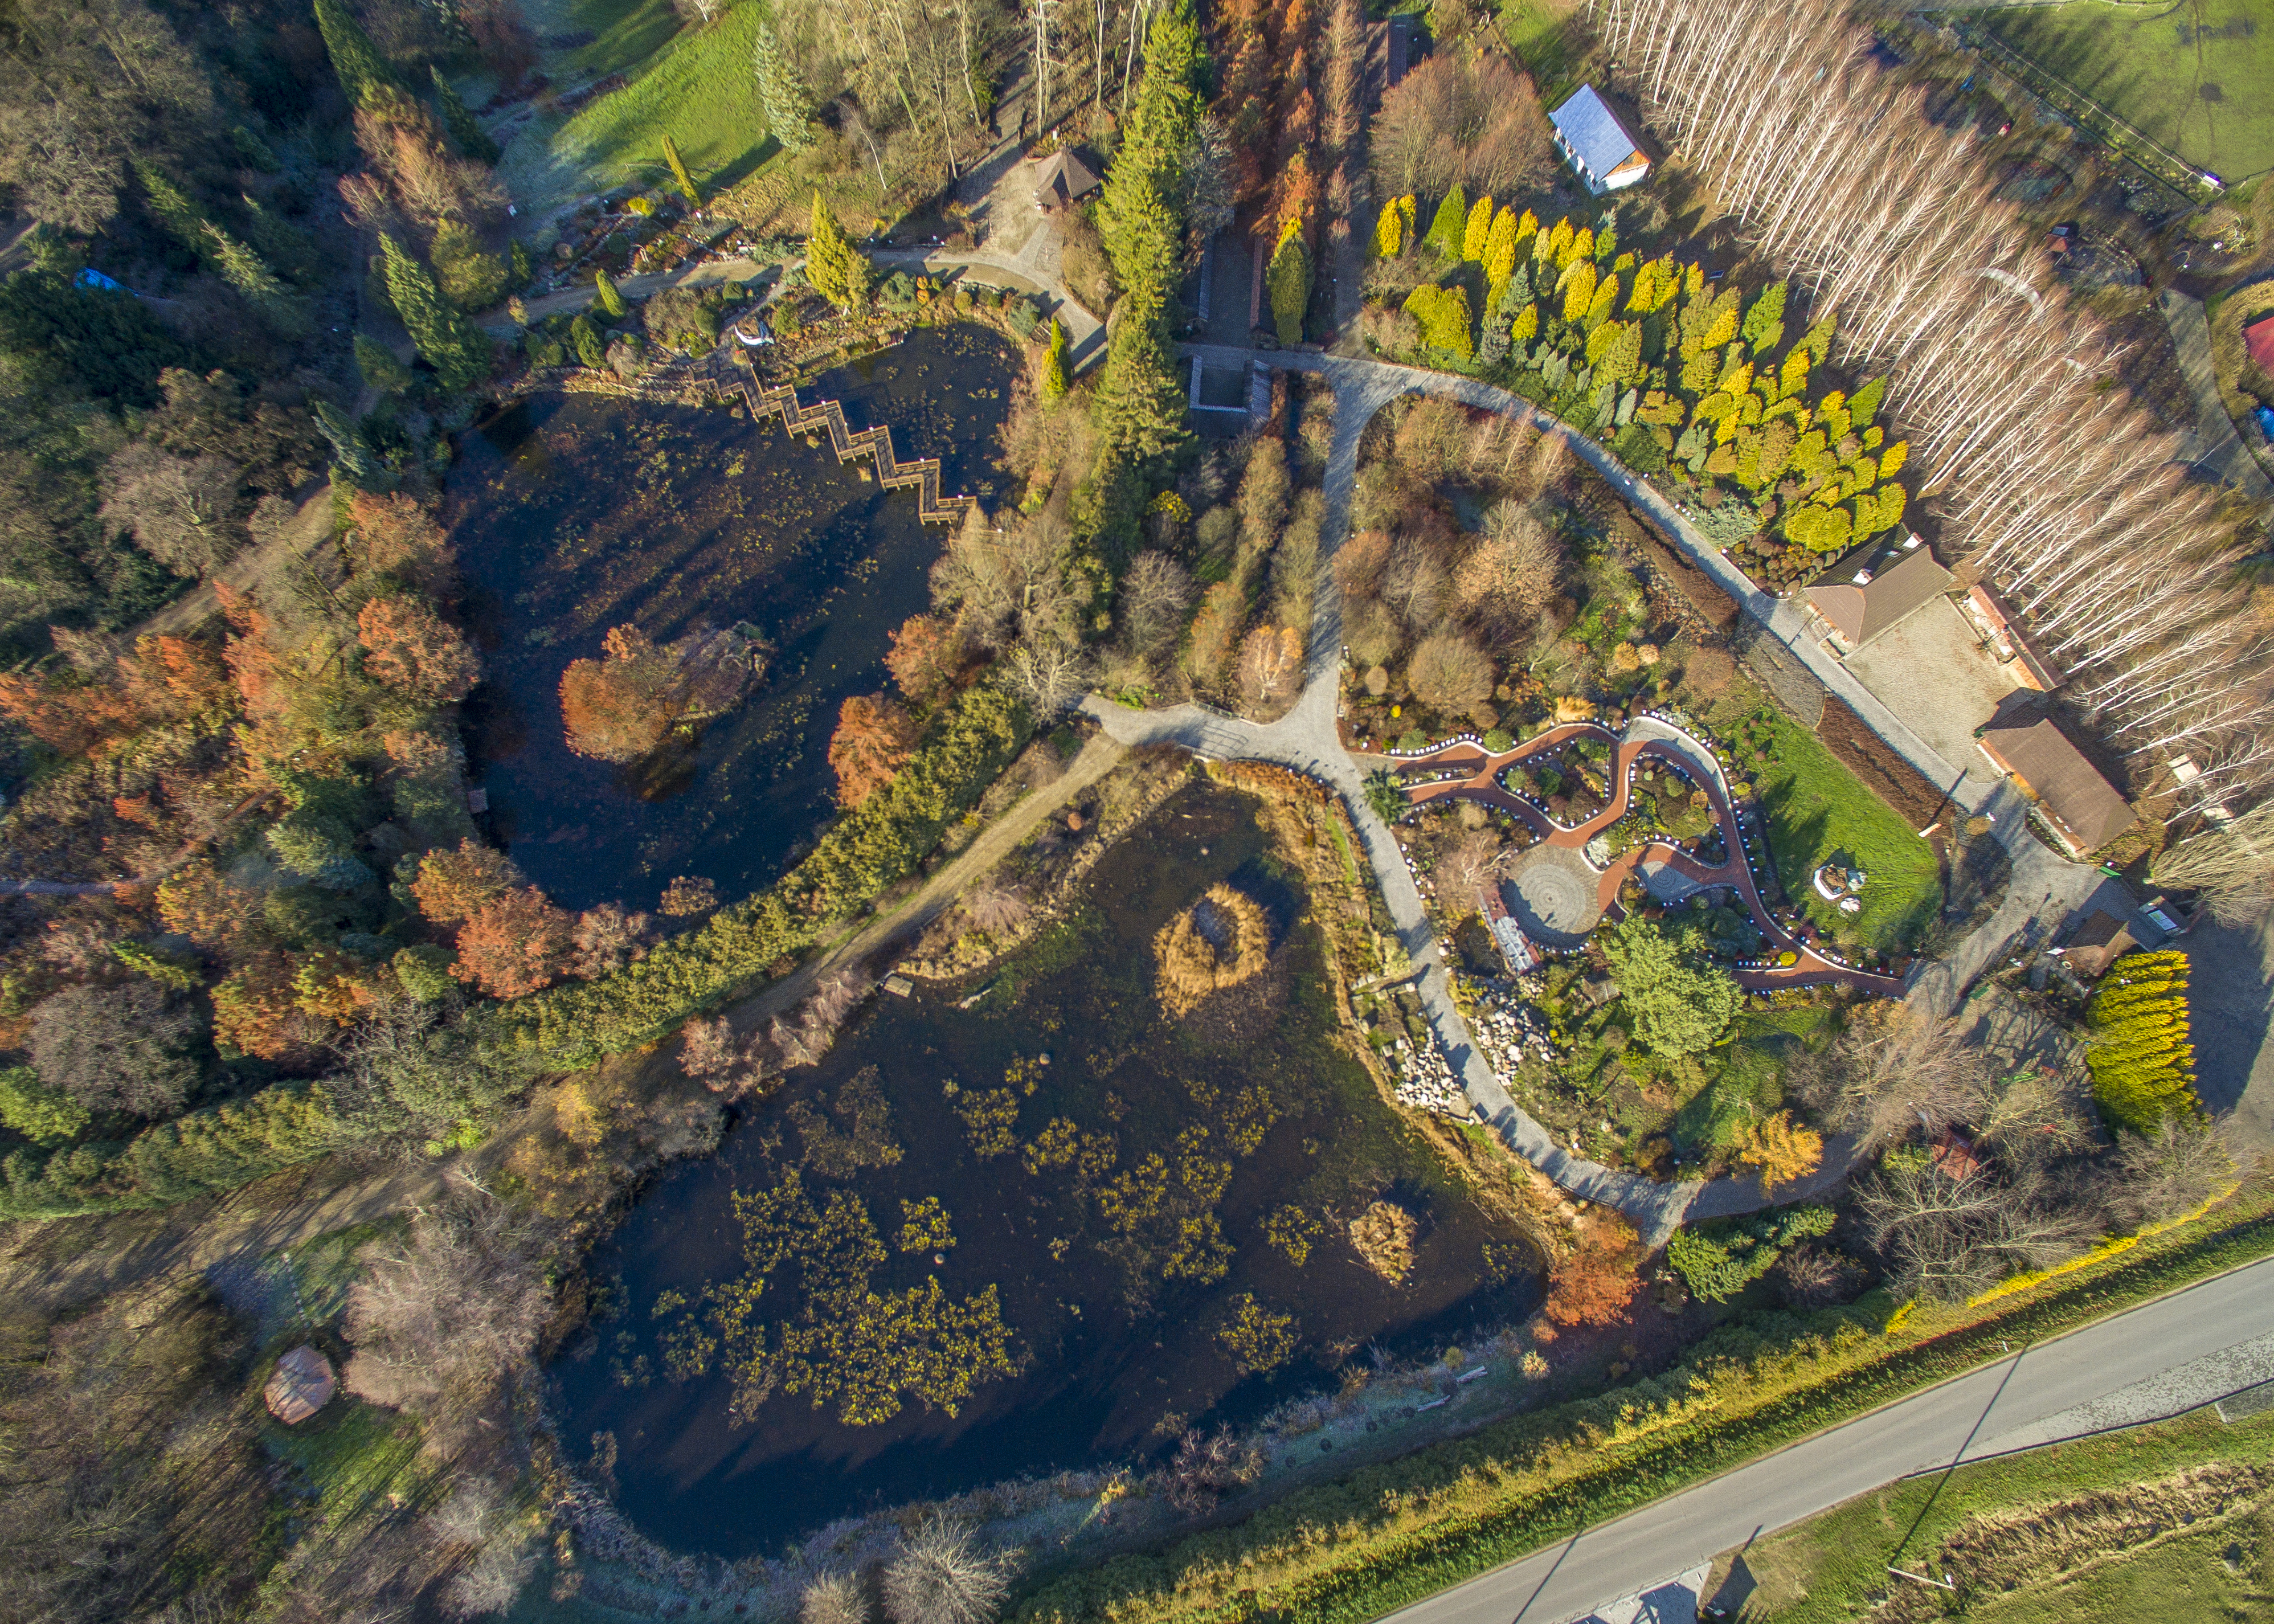 Widok z lotu ptaka na ogród sensualny, po lewej widać alejki i kopiec ziemi a po prawej dwa domy Arboretum.